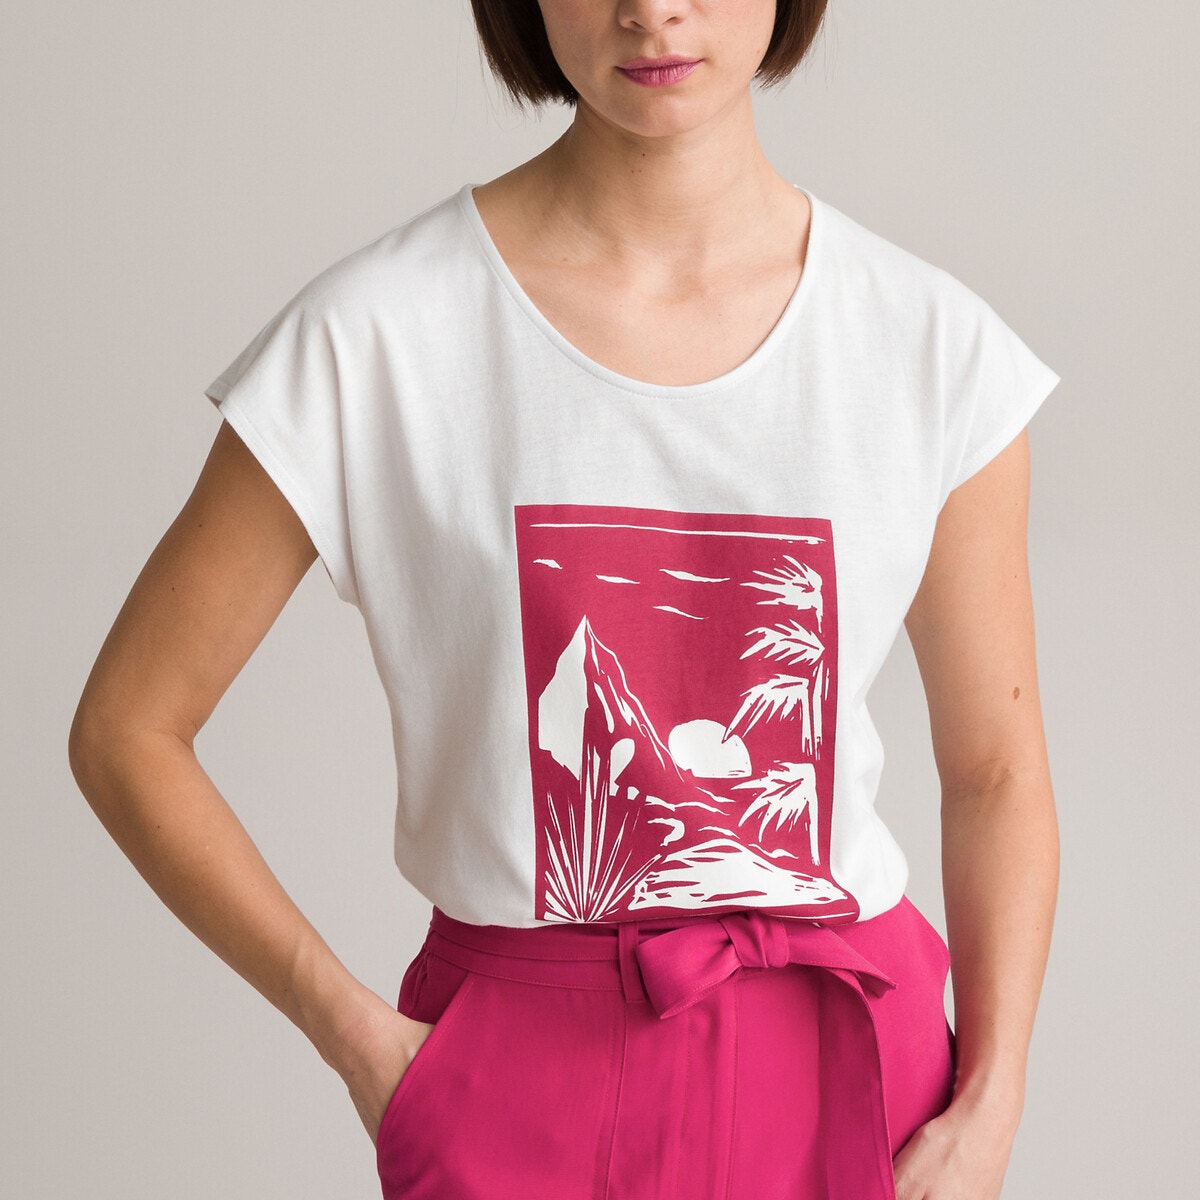 Μόδα > Γυναικεία > Ρούχα > T-shirt, αμάνικες μπλούζες > T-shirt με κοντά μανίκια Κοντομάνικο T-shirt με στρογγυλή λαιμόκοψη